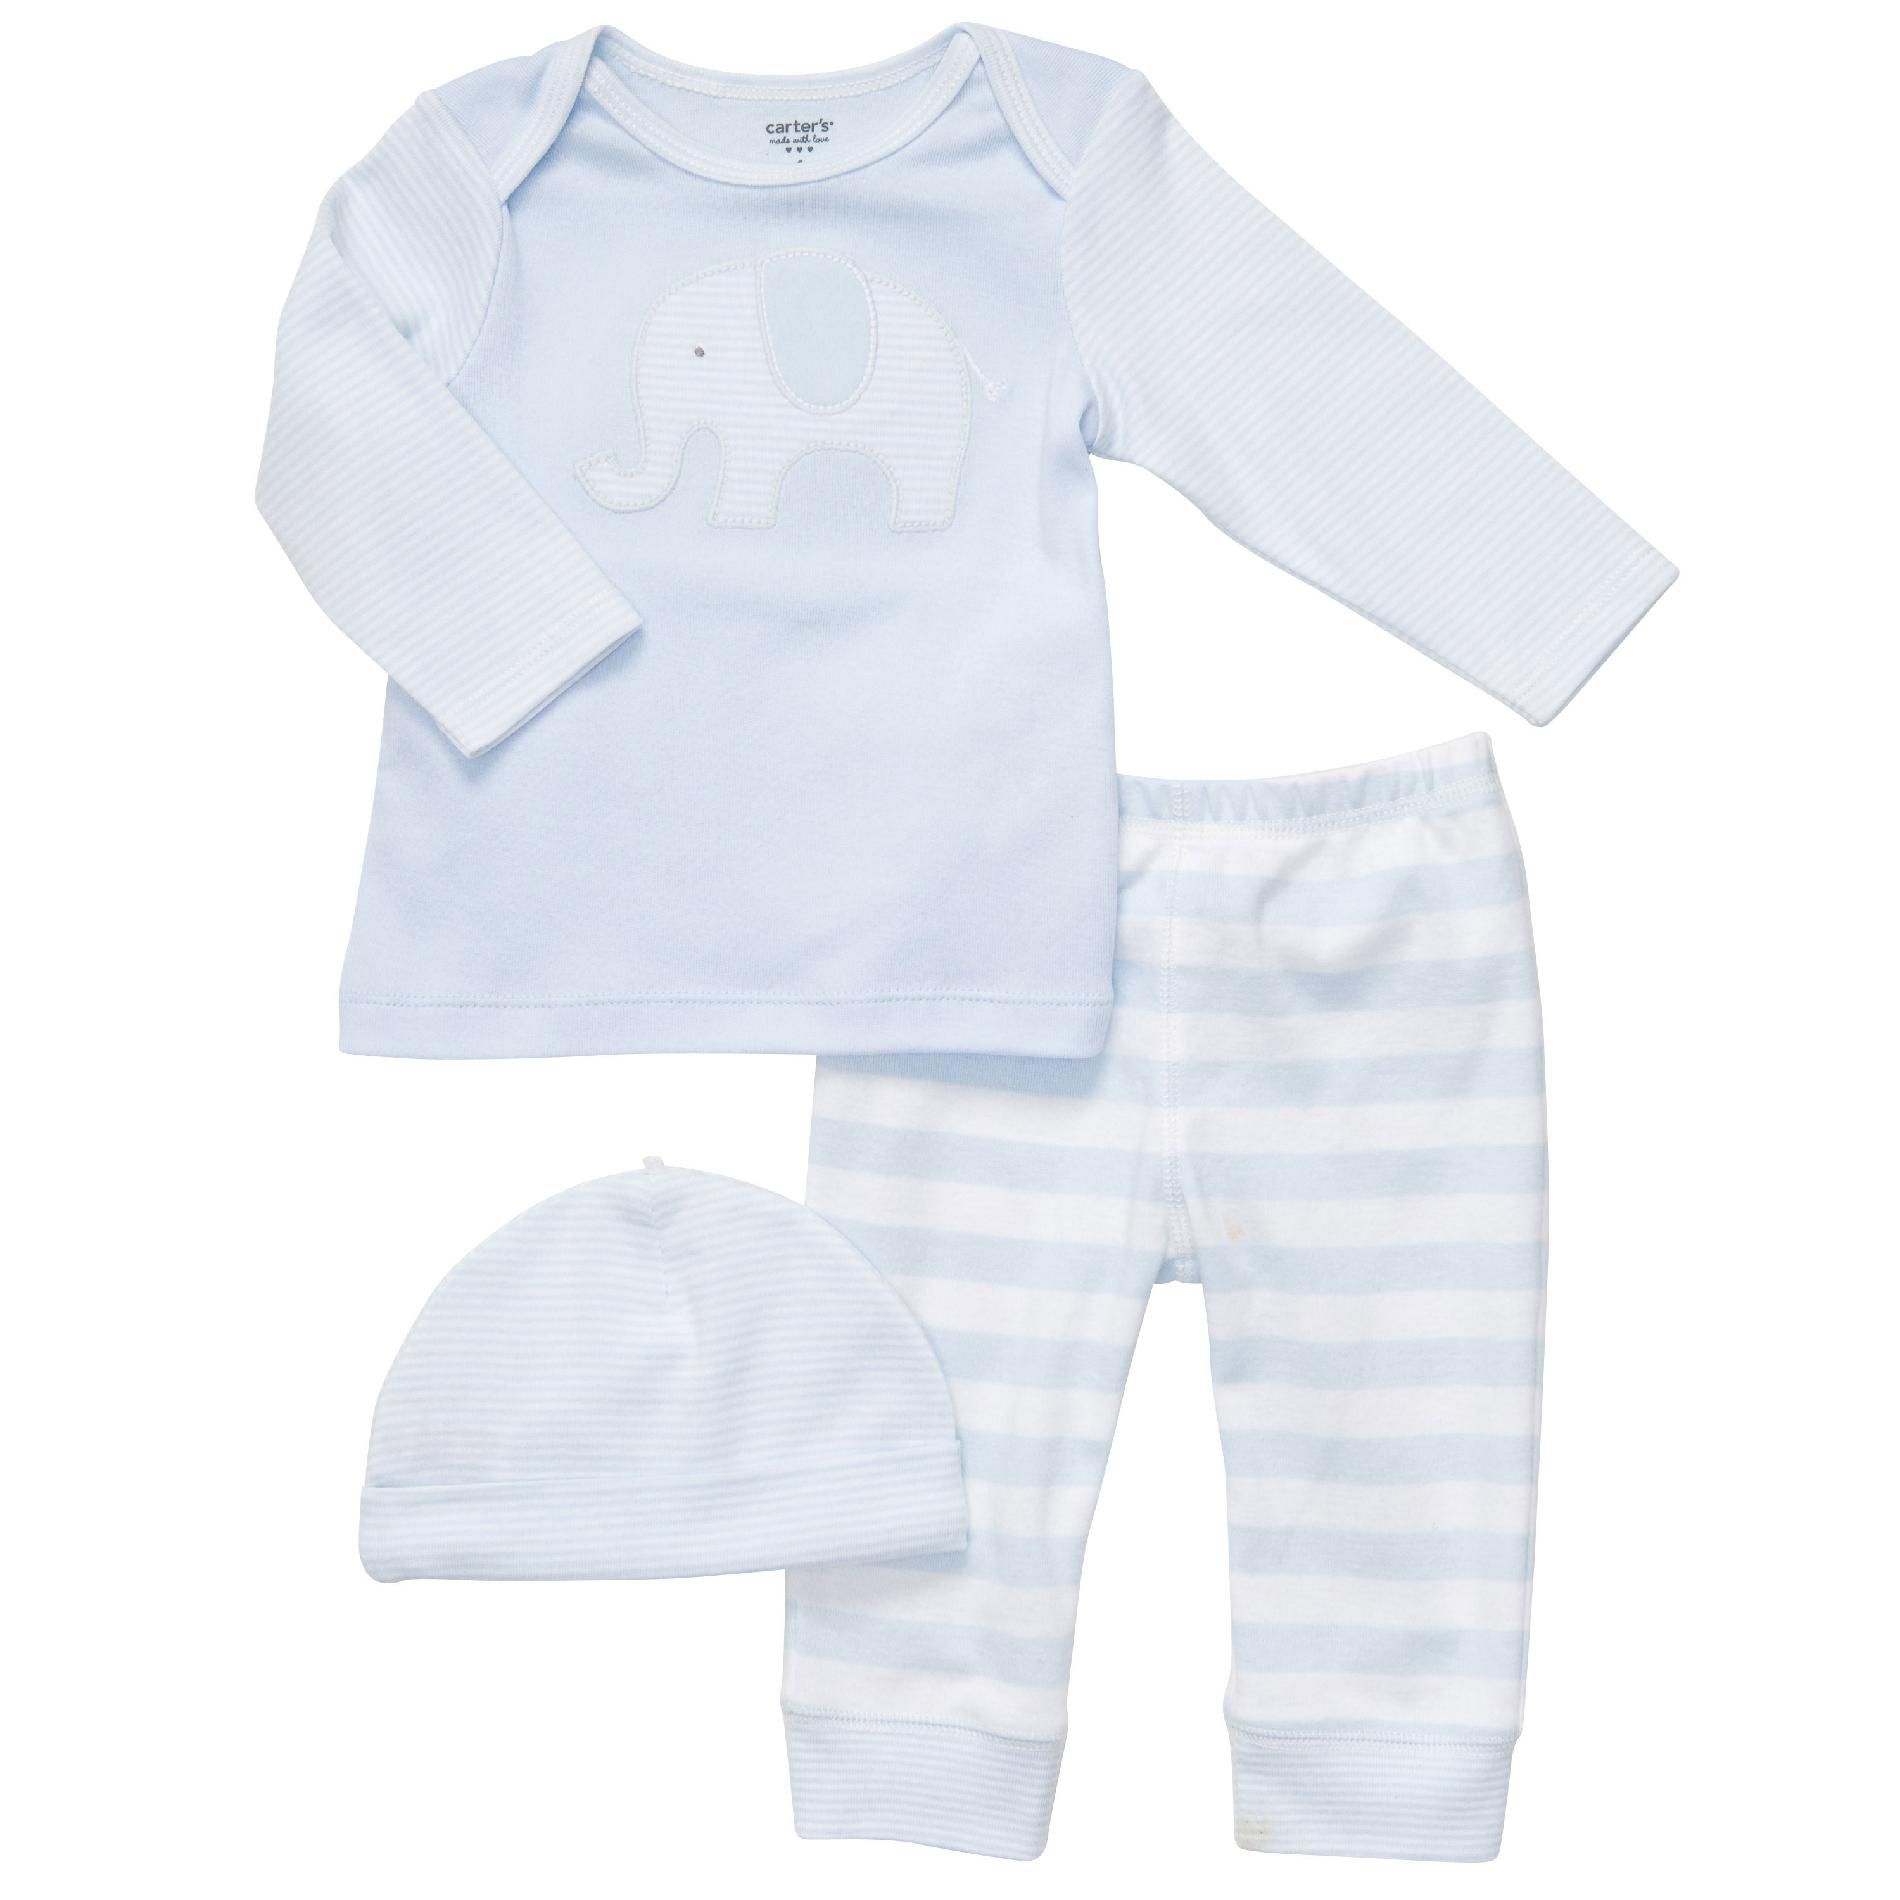 Carter's Infant Set 3pc Blue Elephant with Cap Cotton-Blend